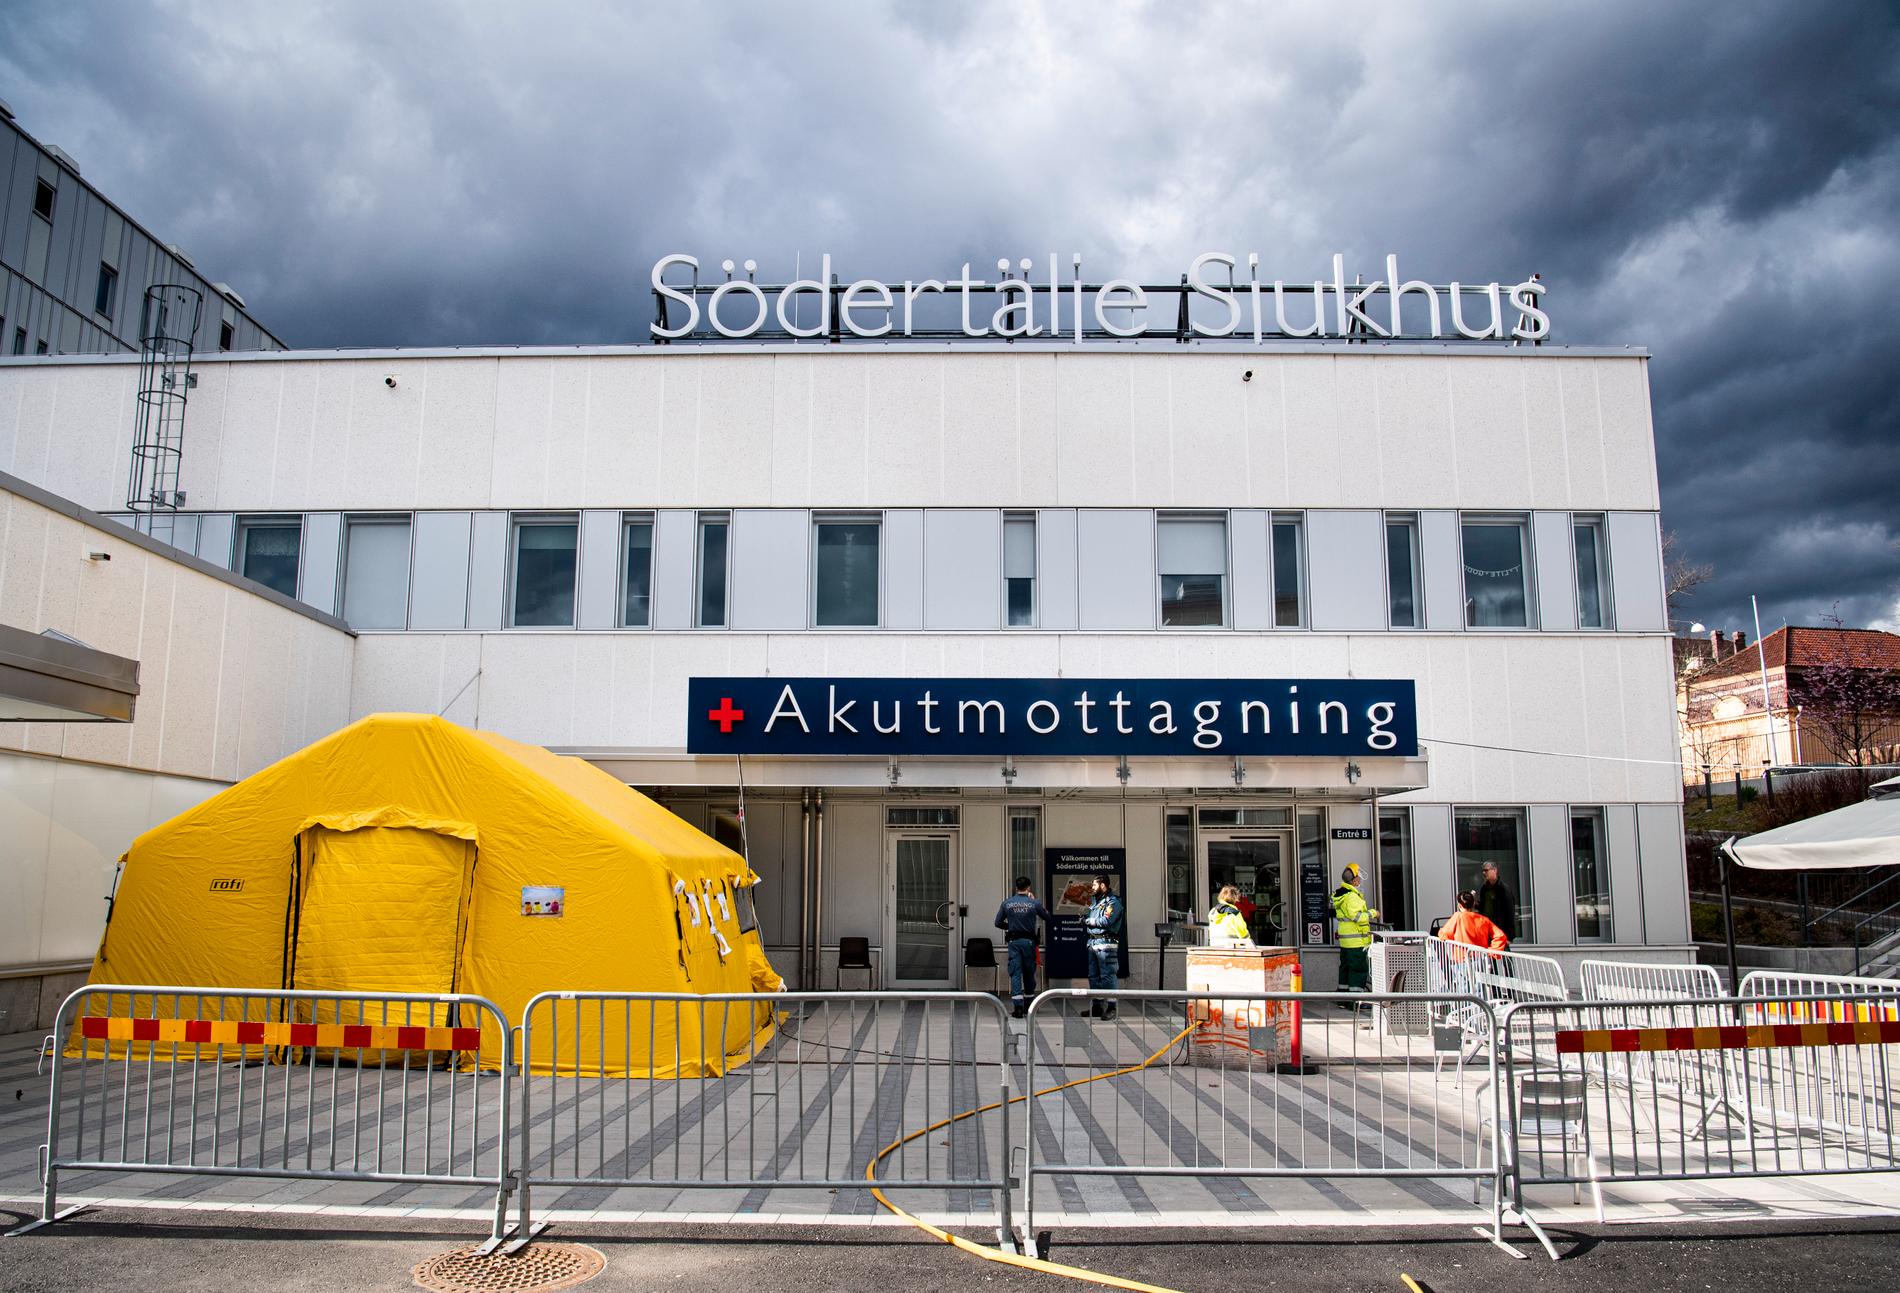 Södertälje sjukhus är ett av tre akutsjukhus i Region Stockholm som kommer att lämna krislägesavtalet. Så här såg det ut vid akutmottagningen i april i år, där ett bedömningstält placerats.